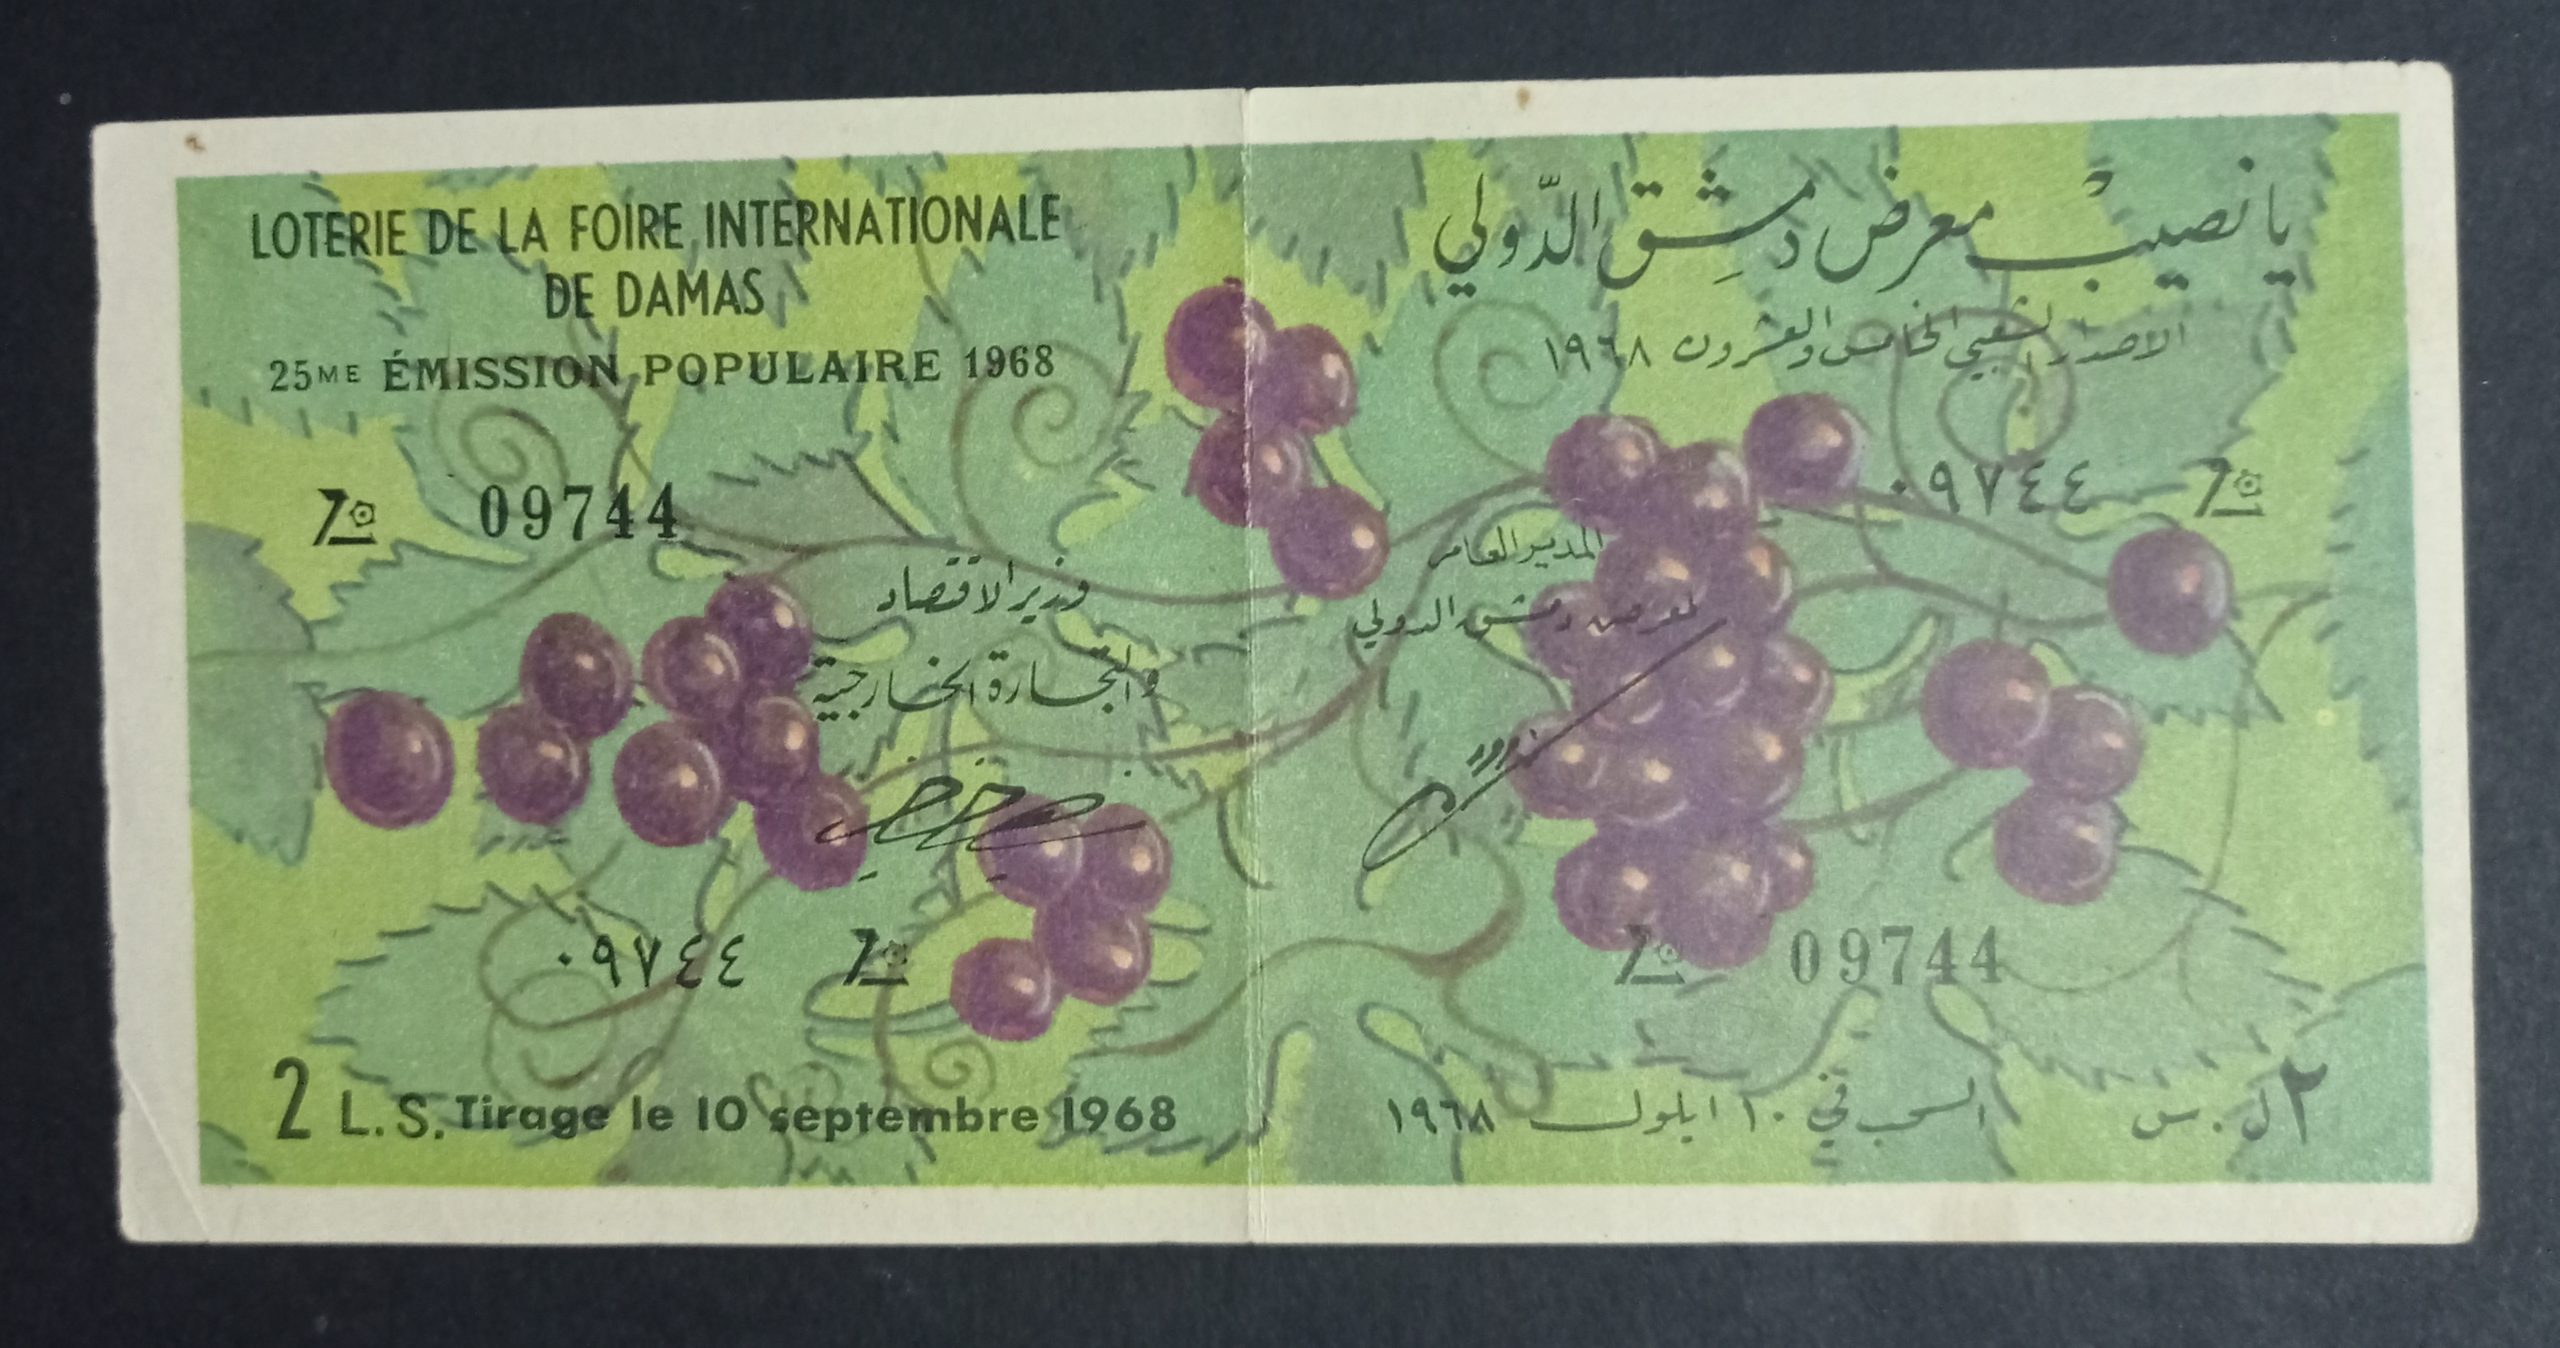 التاريخ السوري المعاصر - يانصيب معرض دمشق الدولي - الإصدار الشعبي الخامس و العشرون عام 1968